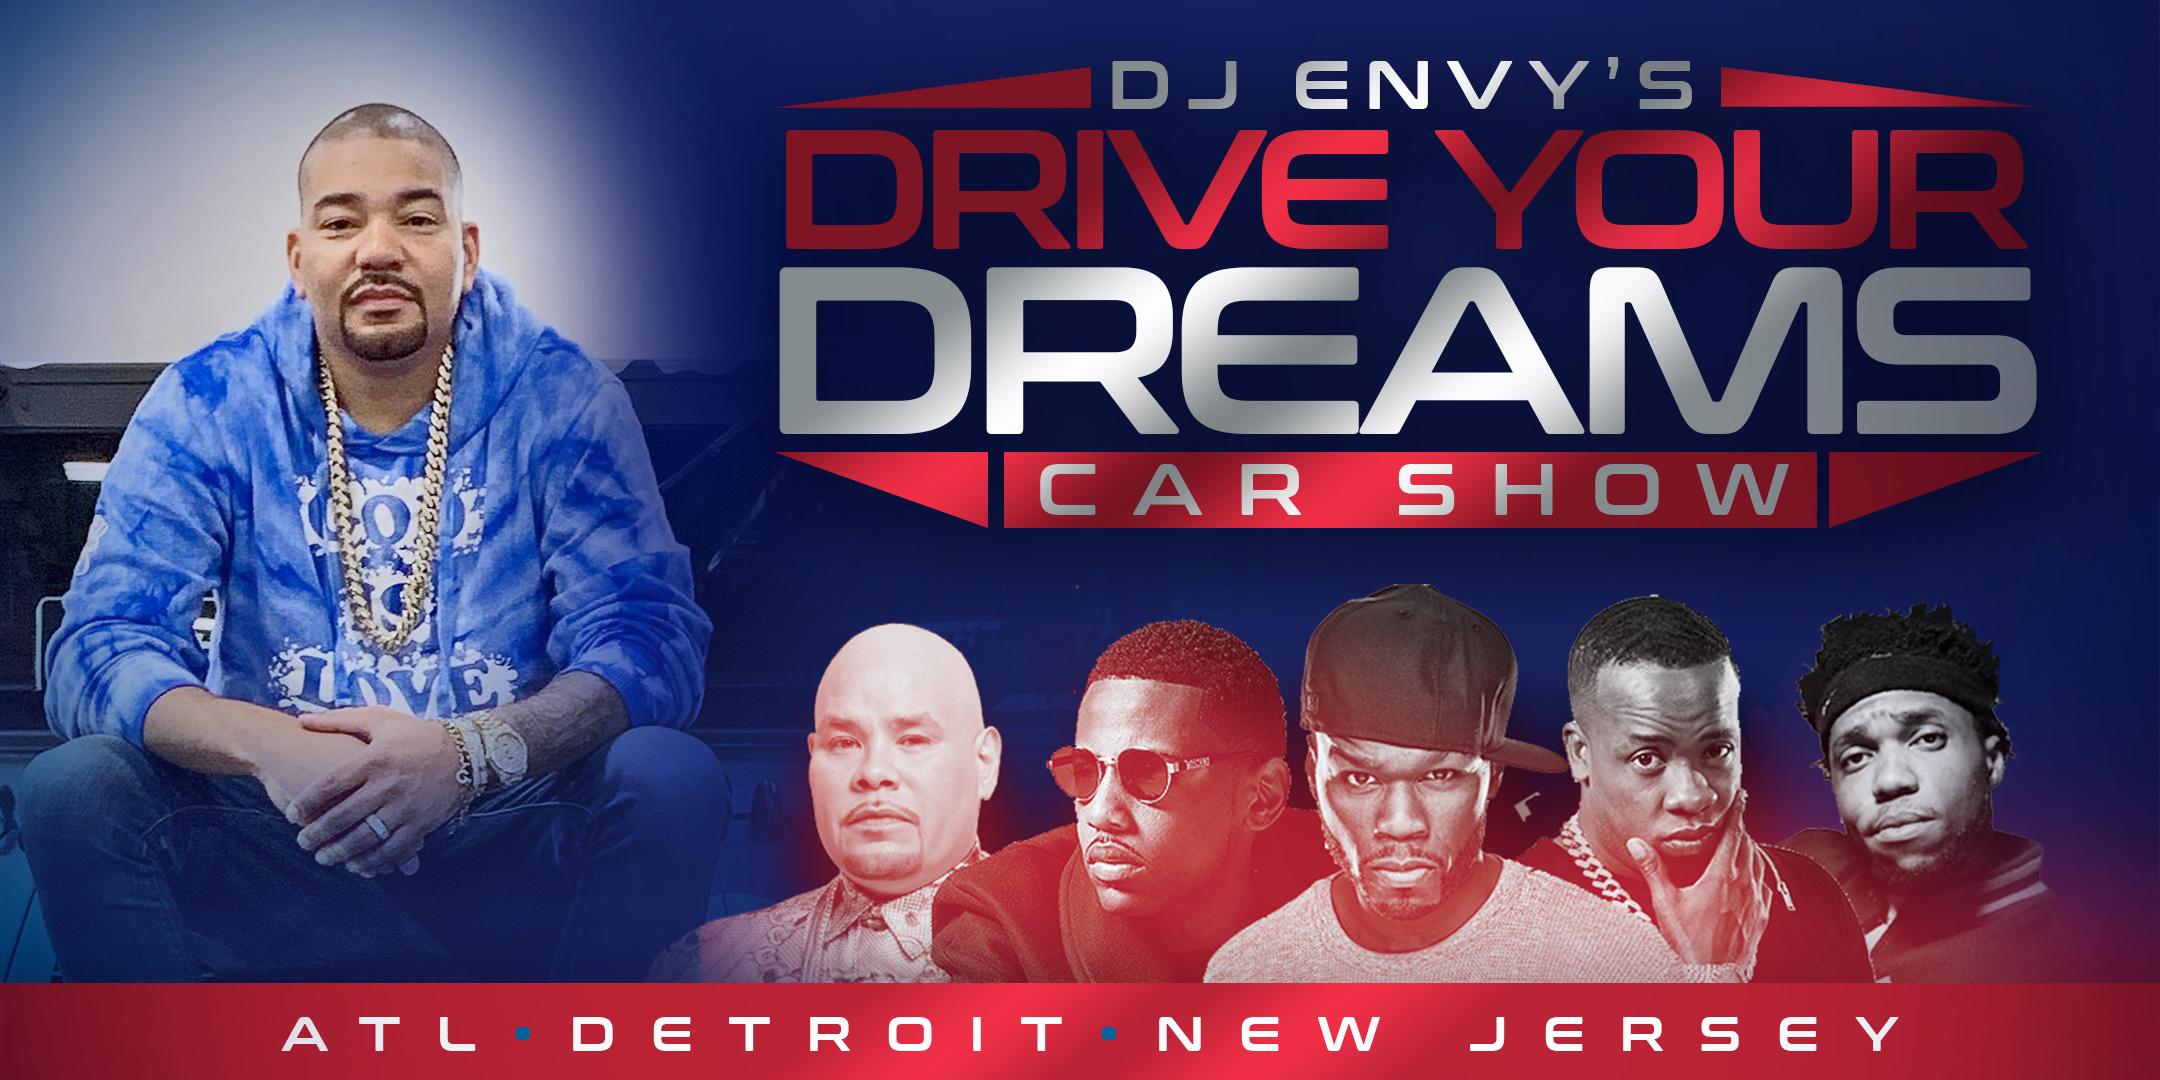 DJ Envy's Drive Your Dreams Car Show [ATLANTA]